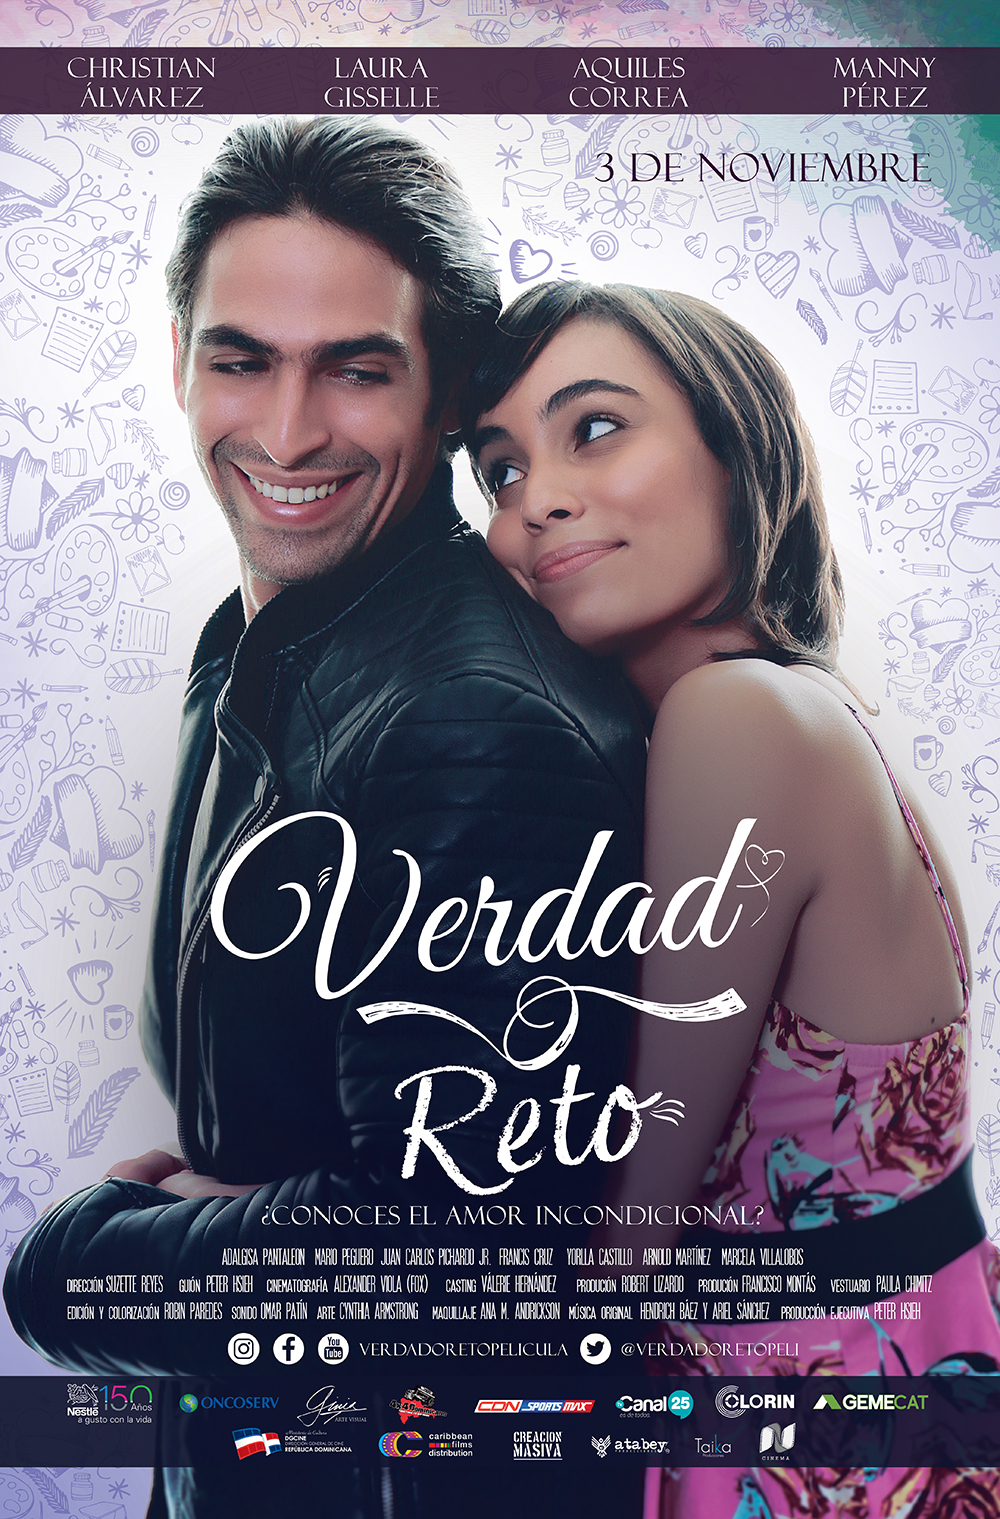 VERDAD O RETO, 2016